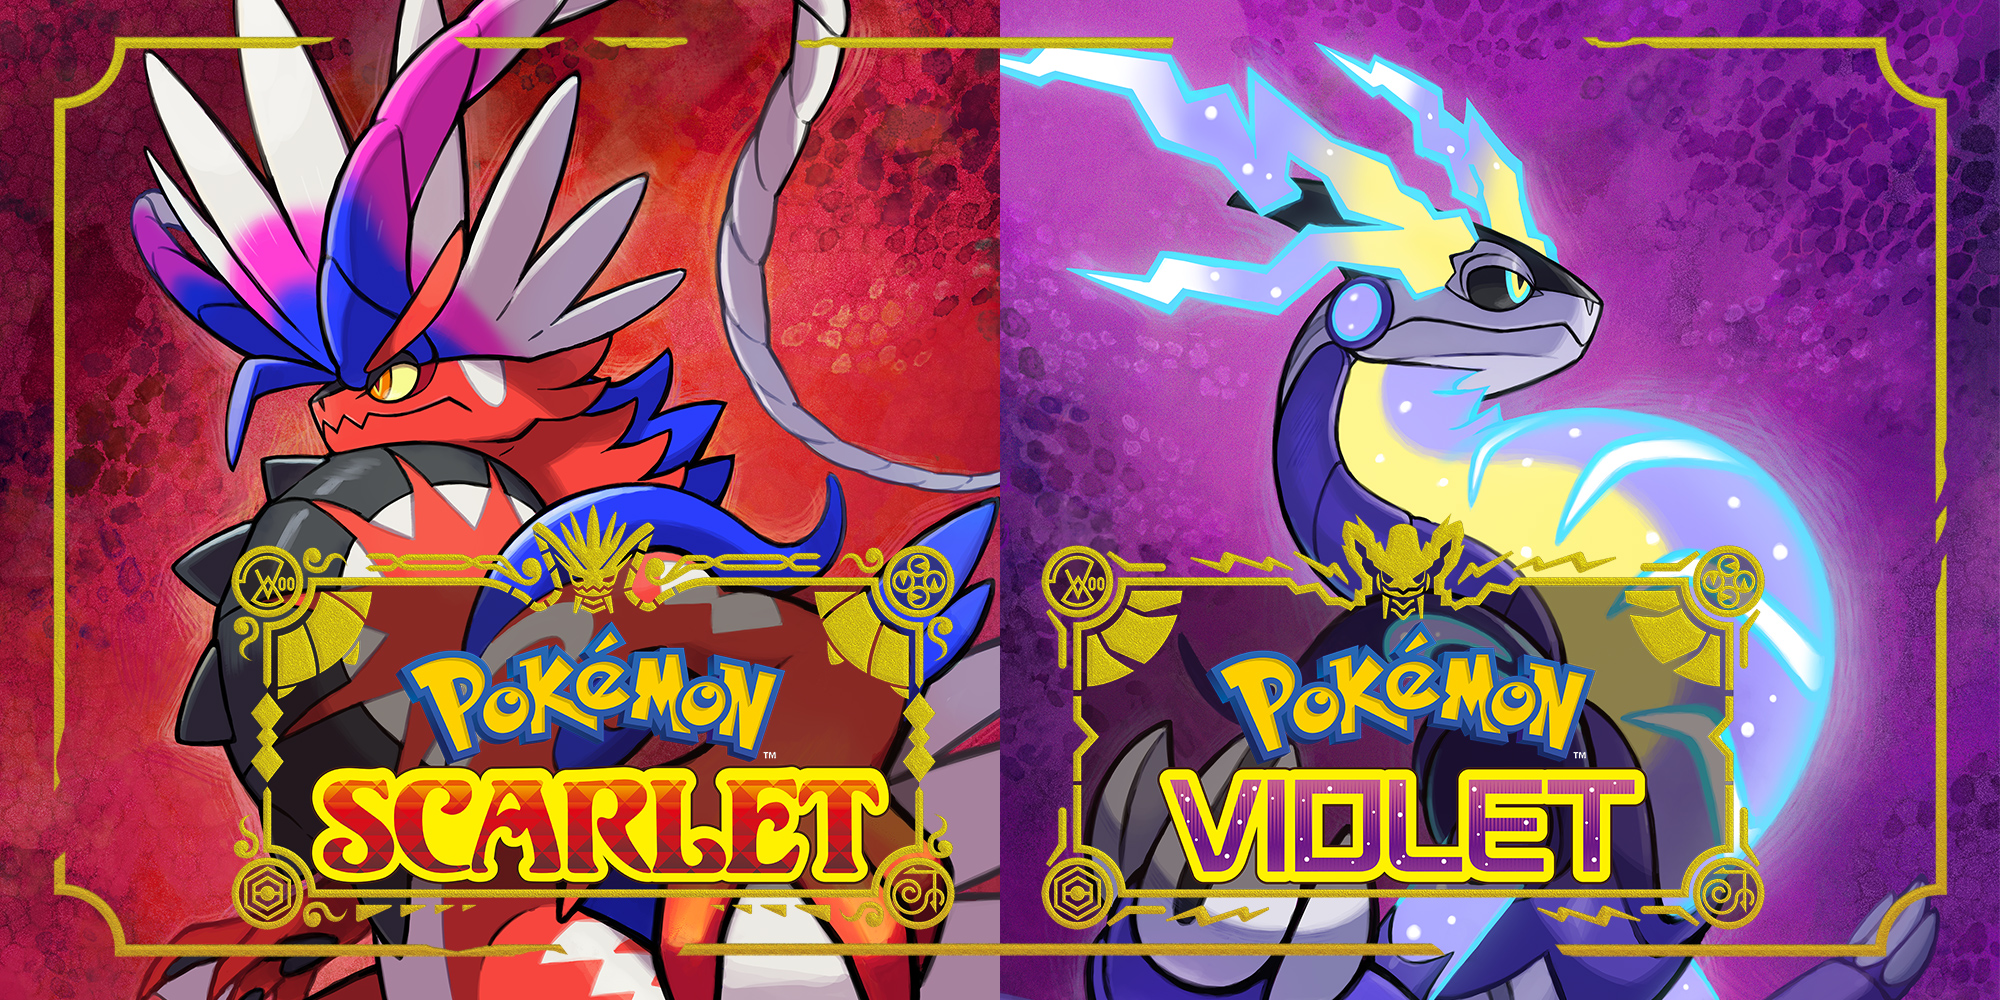 Pokémon Scarlet e Violet são anunciados com trailer; confira! - NerdBunker